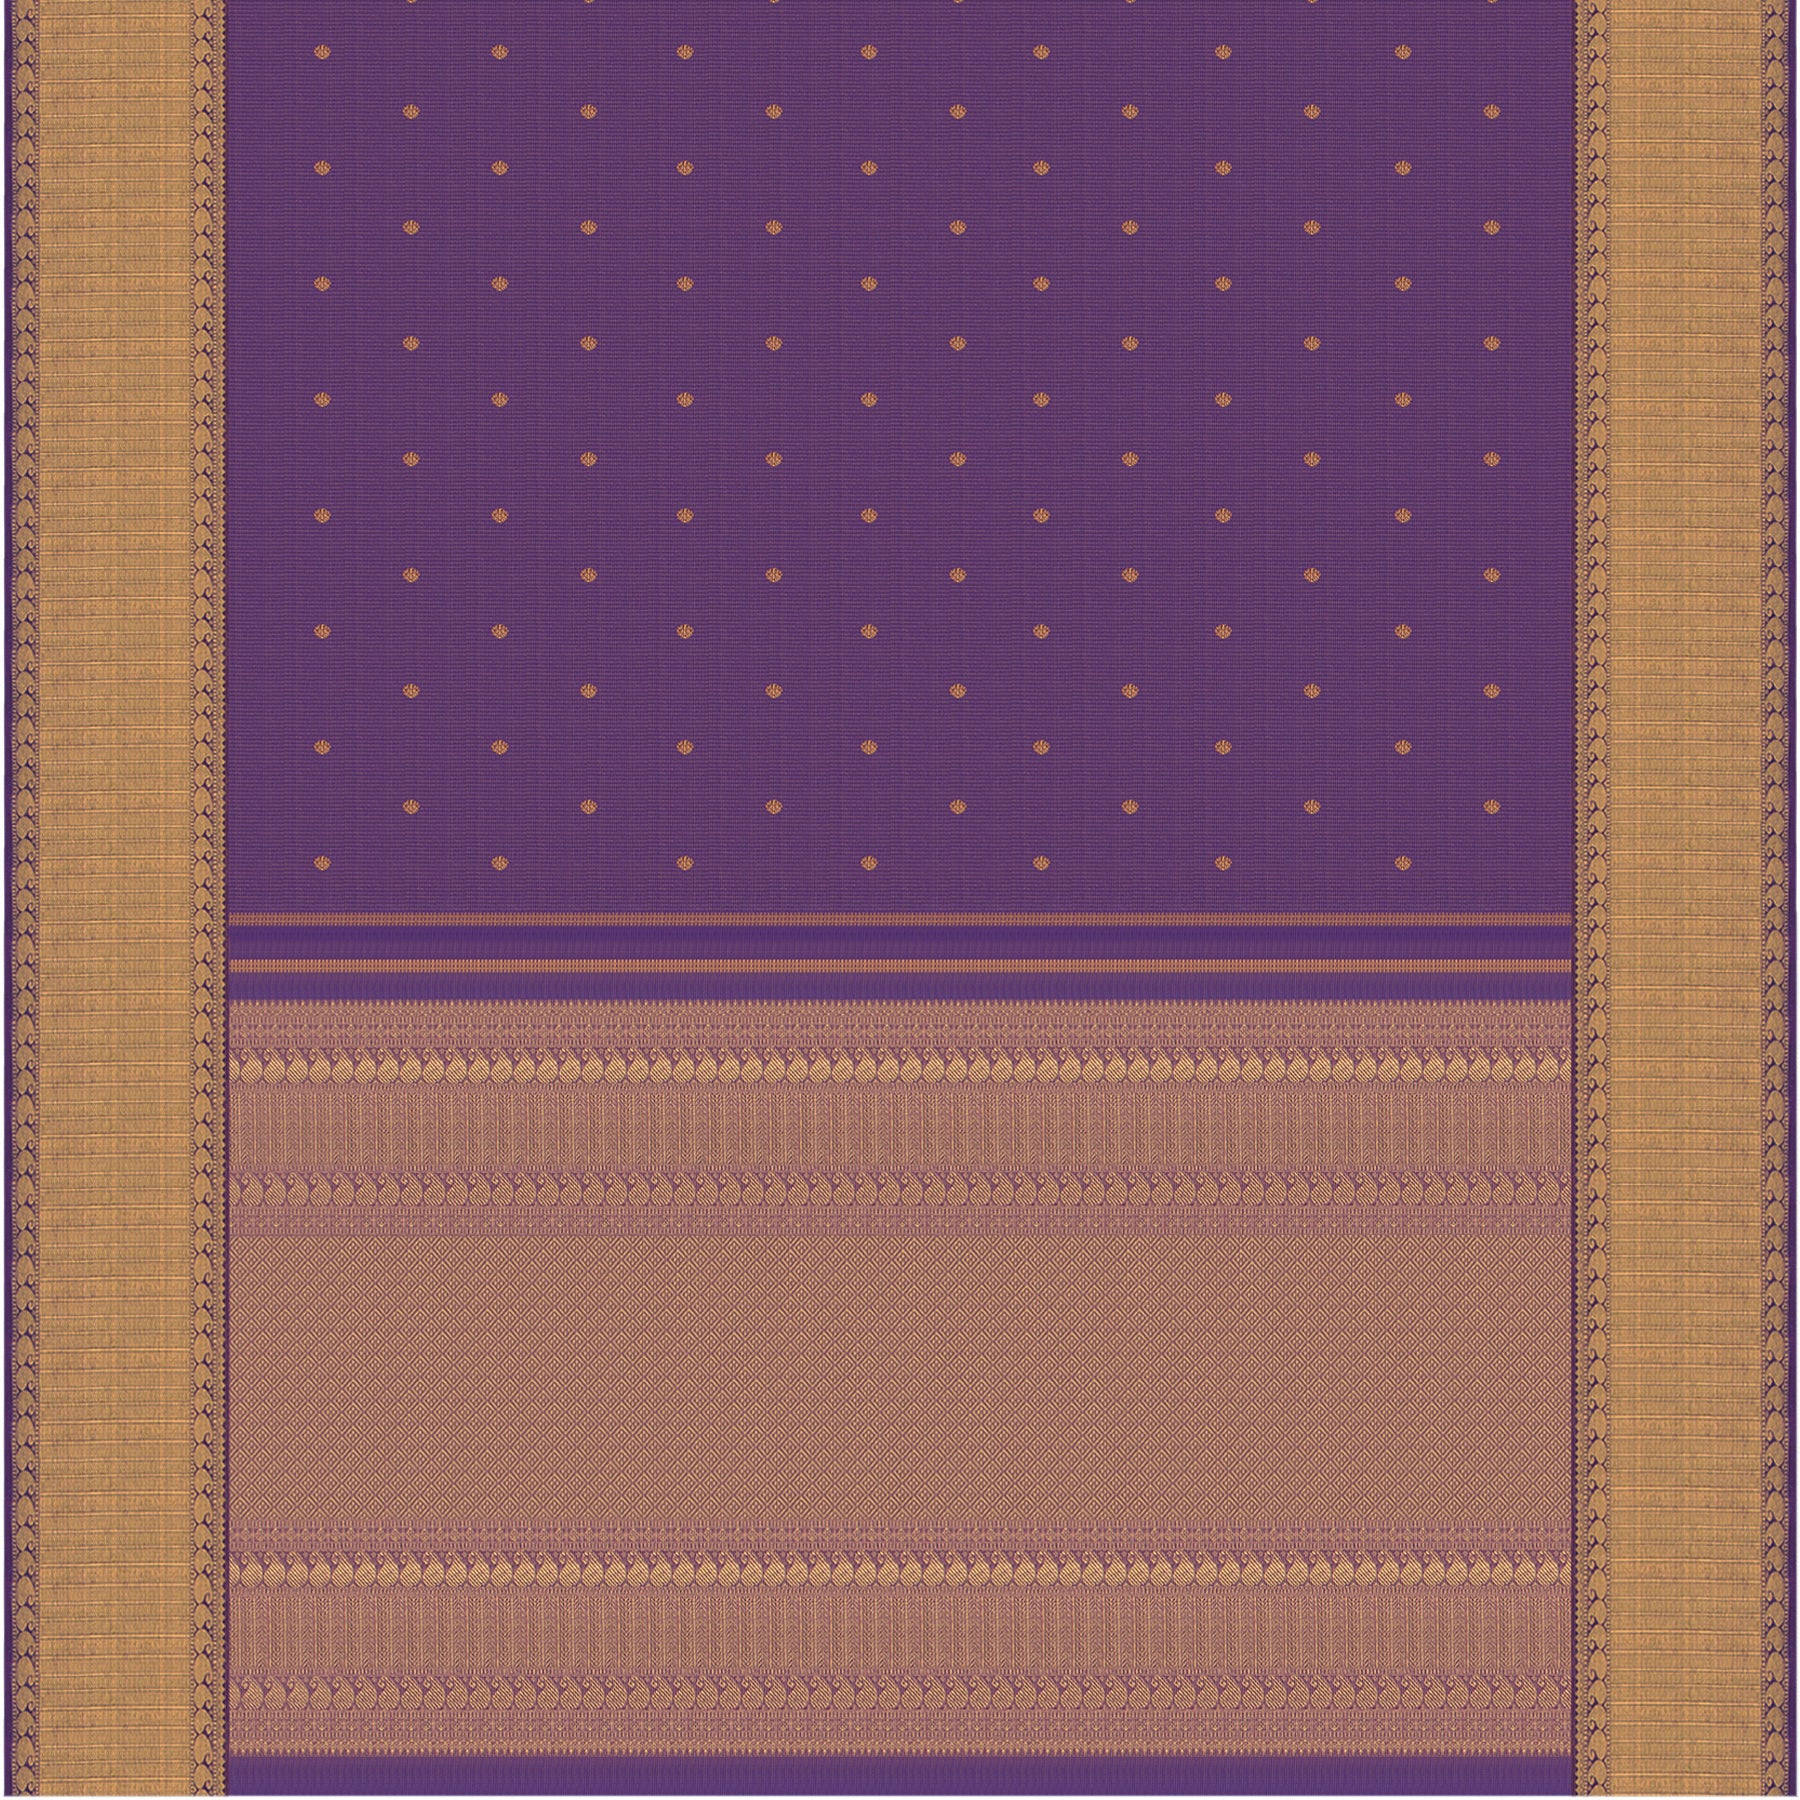 Kanakavalli Kanjivaram Silk Sari 23-110-HS001-12295 - Full View